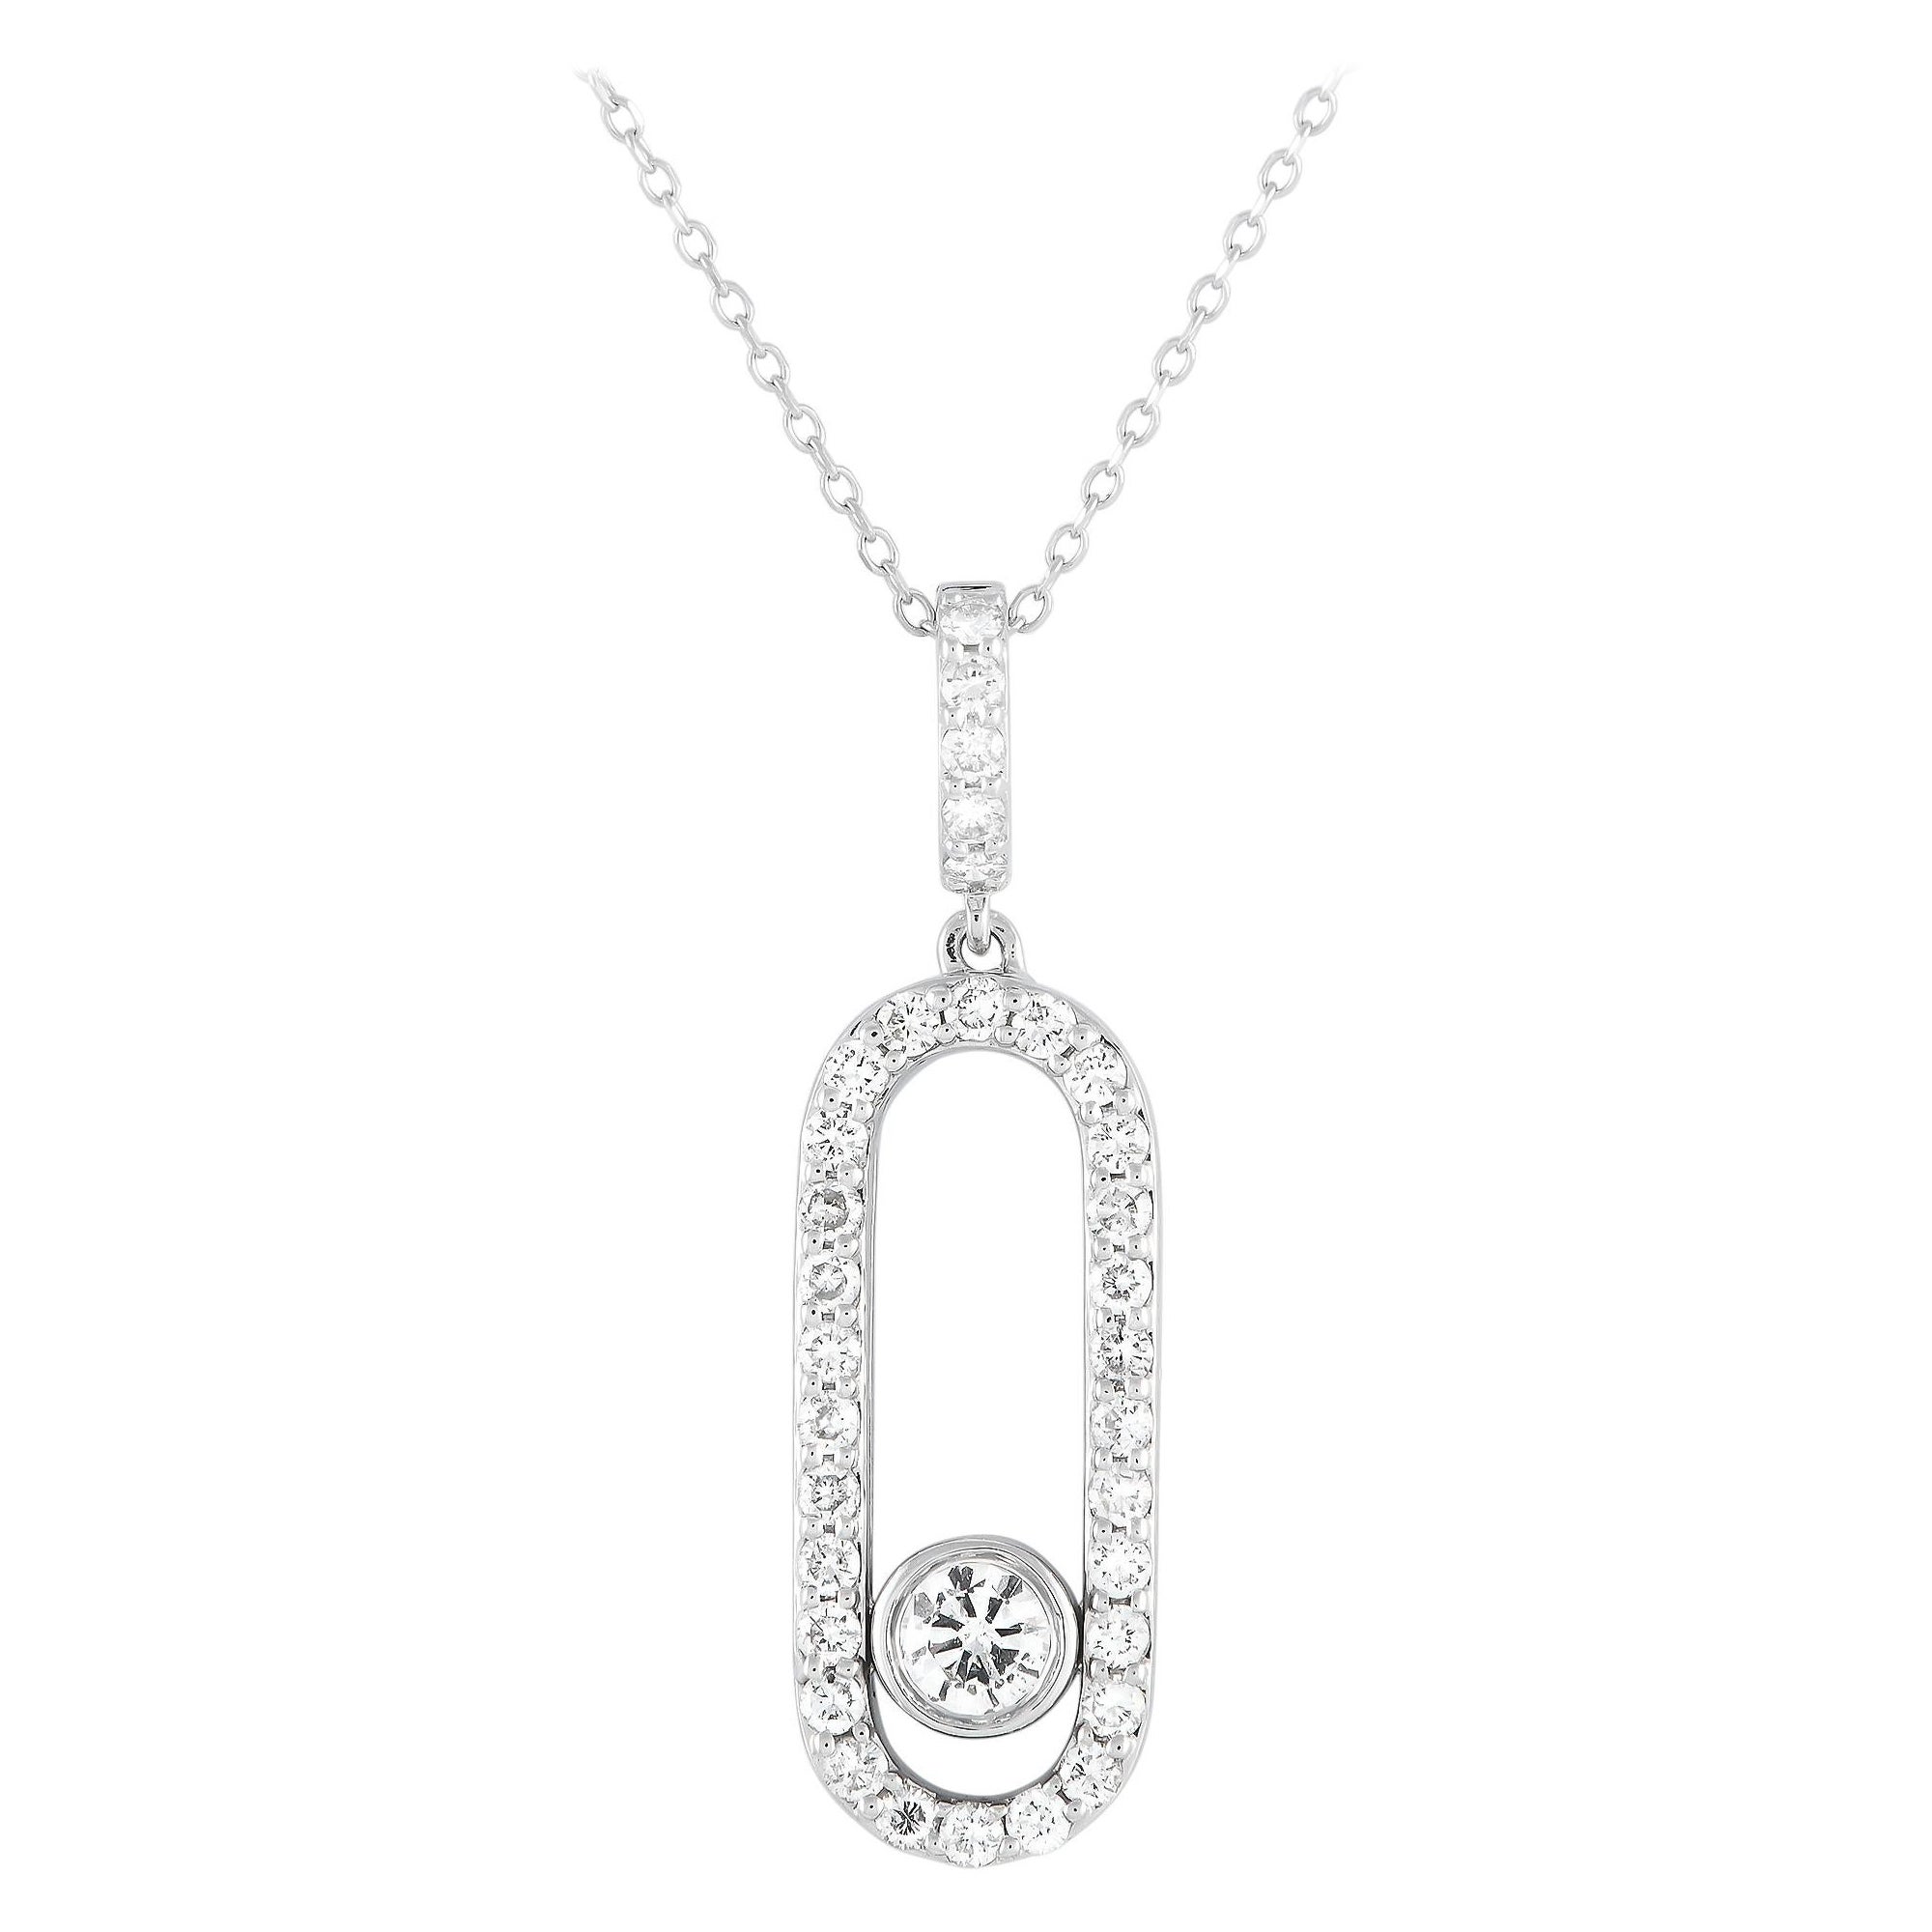 LB Exclusive 18k White Gold 0.70 Carat Diamond Pendant Necklace